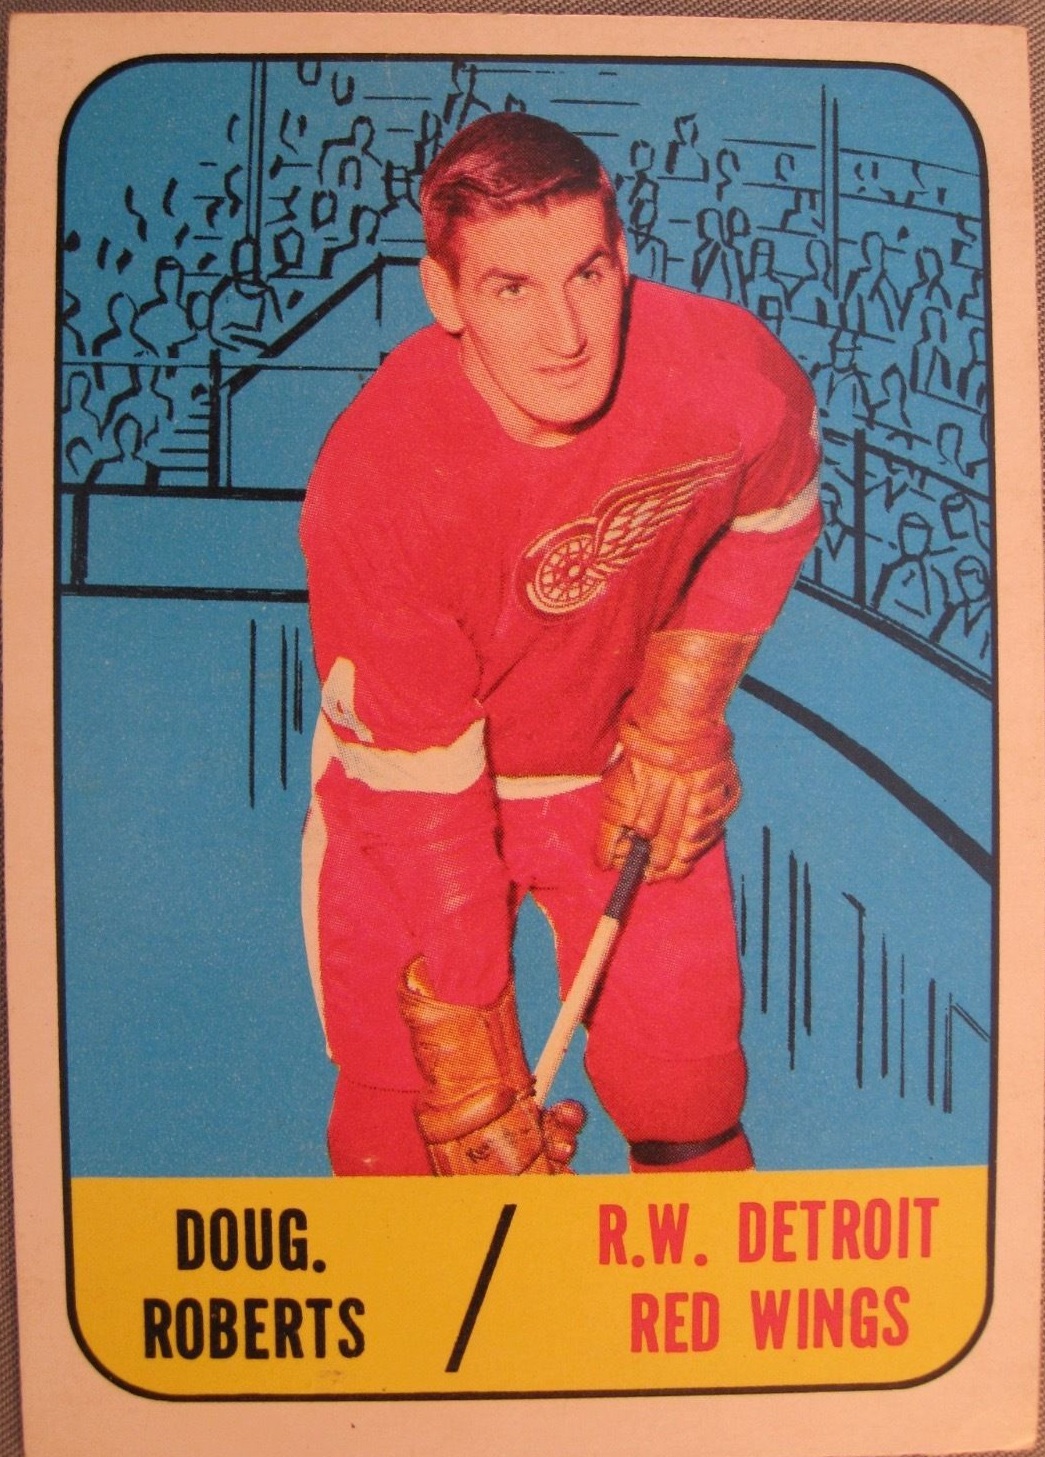  Doug Roberts player image